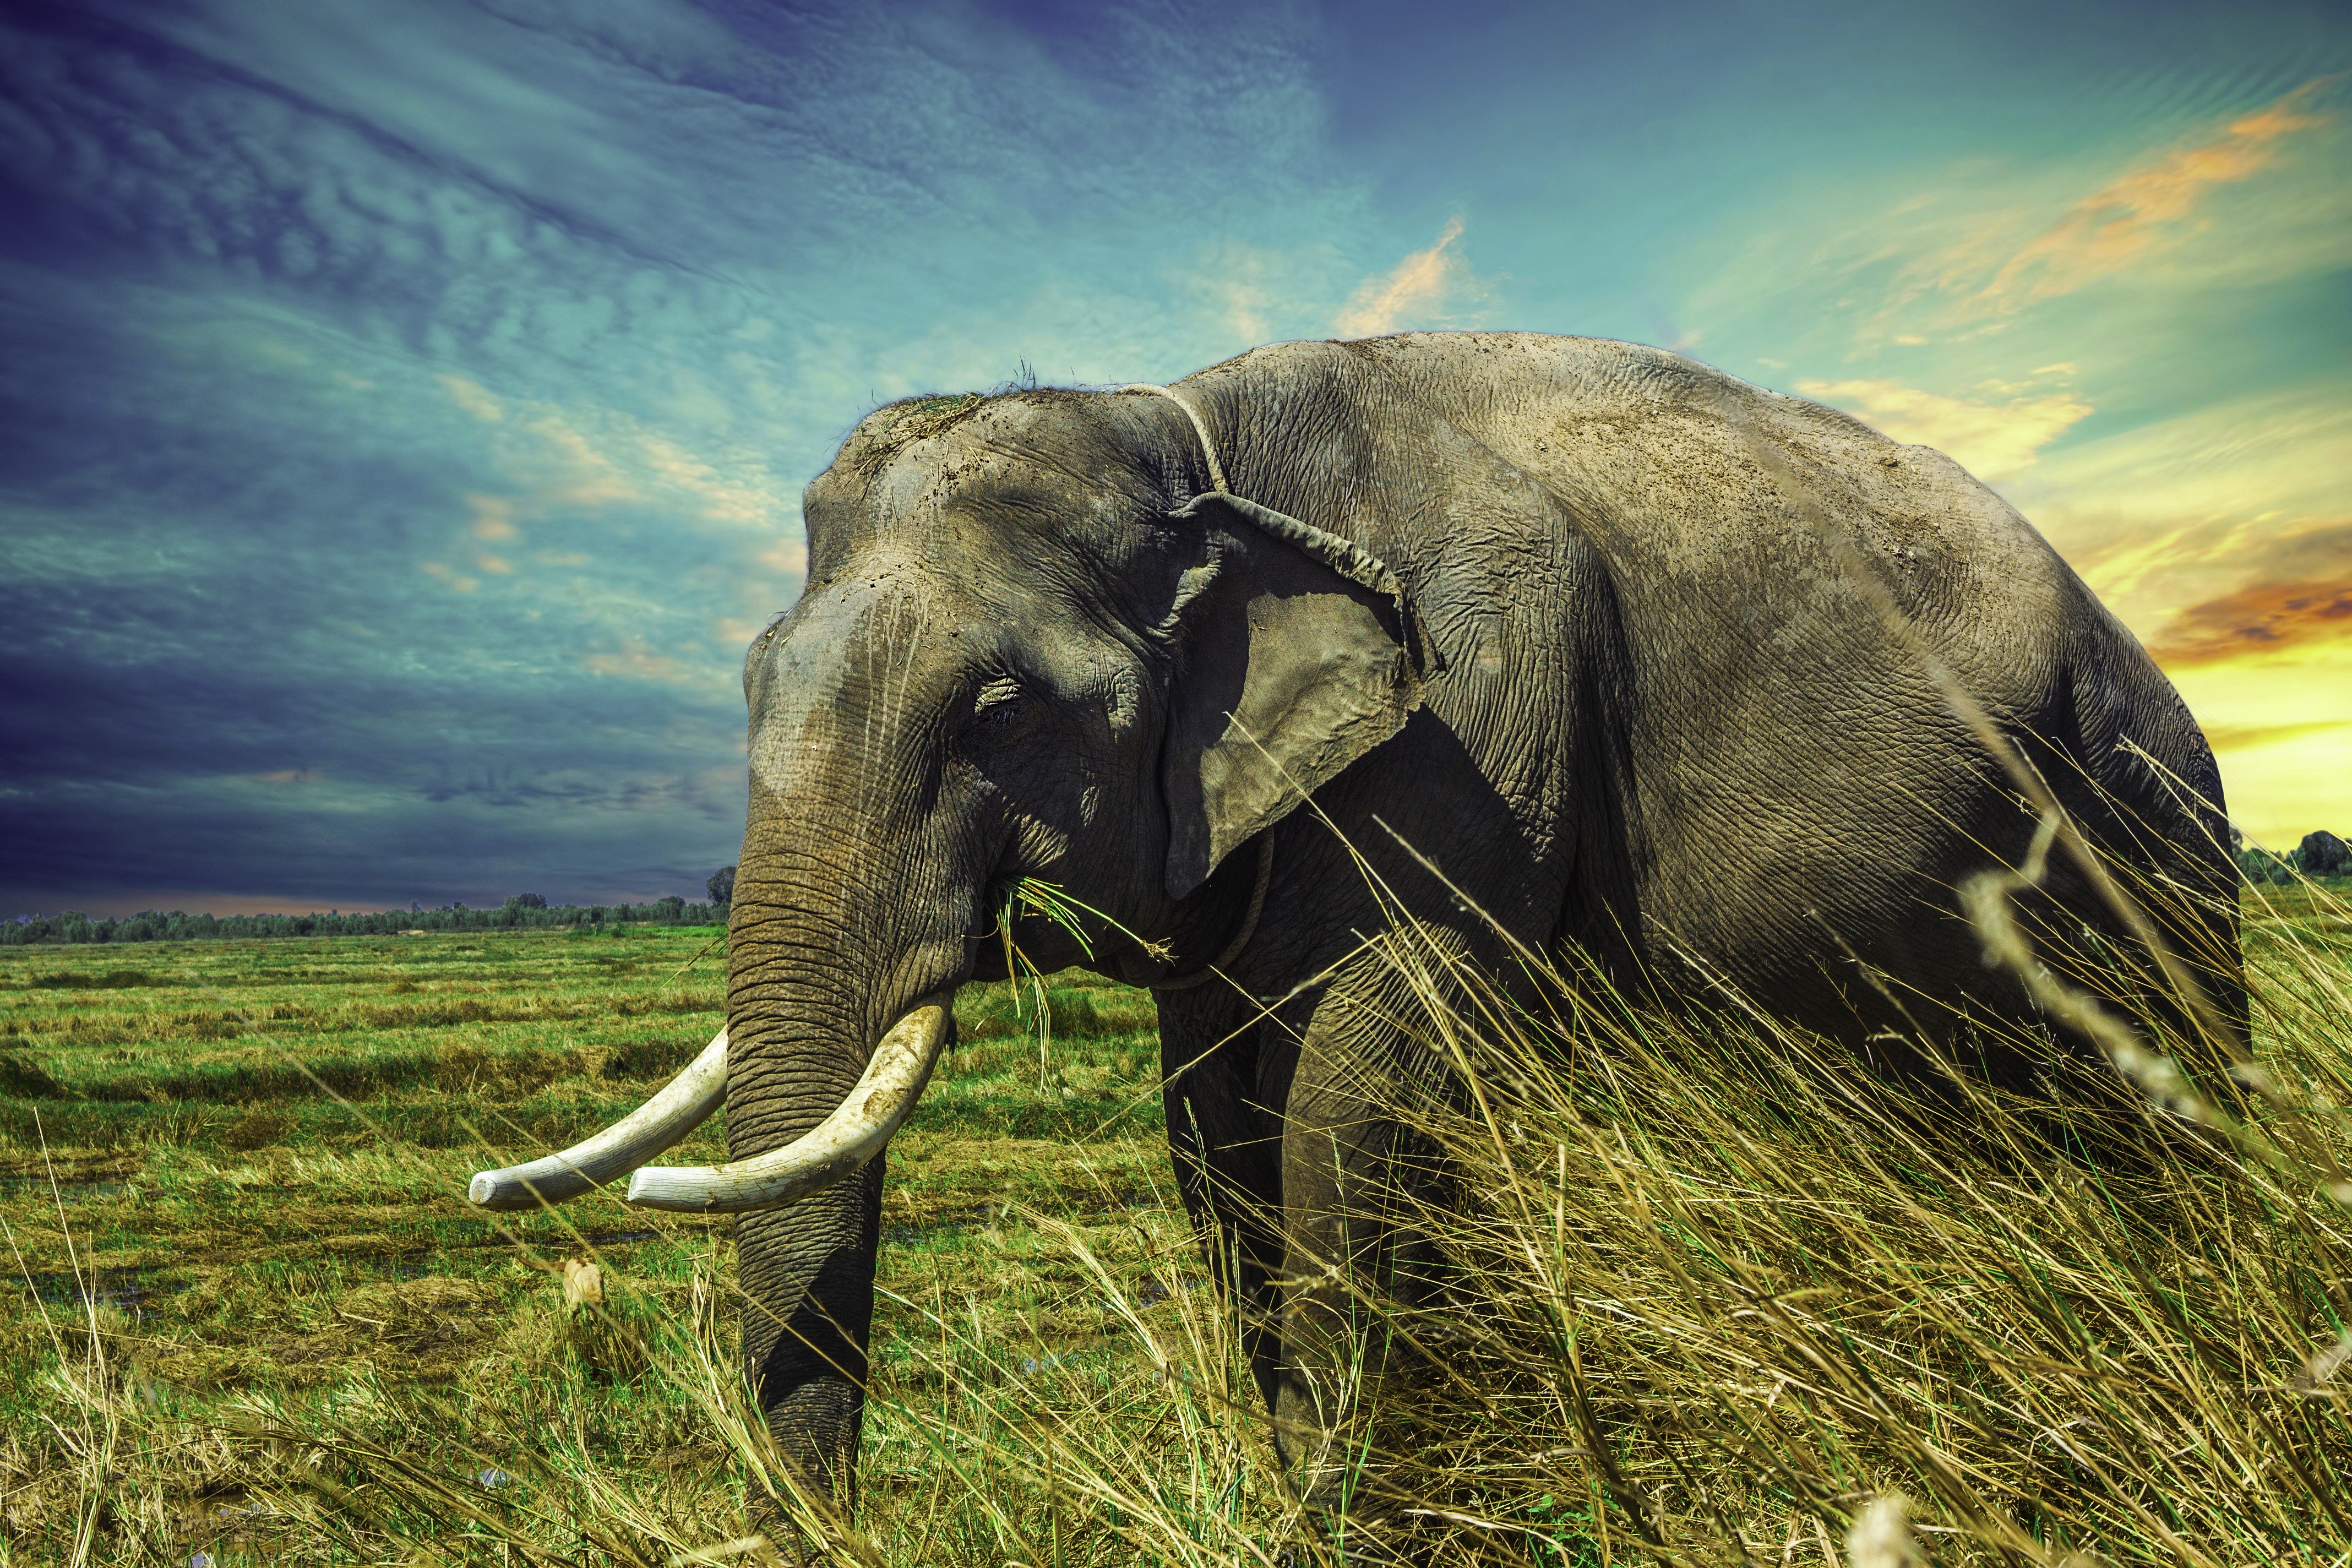 elefantentapete,elefant,elefanten und mammuts,landtier,indischer elefant,tierwelt